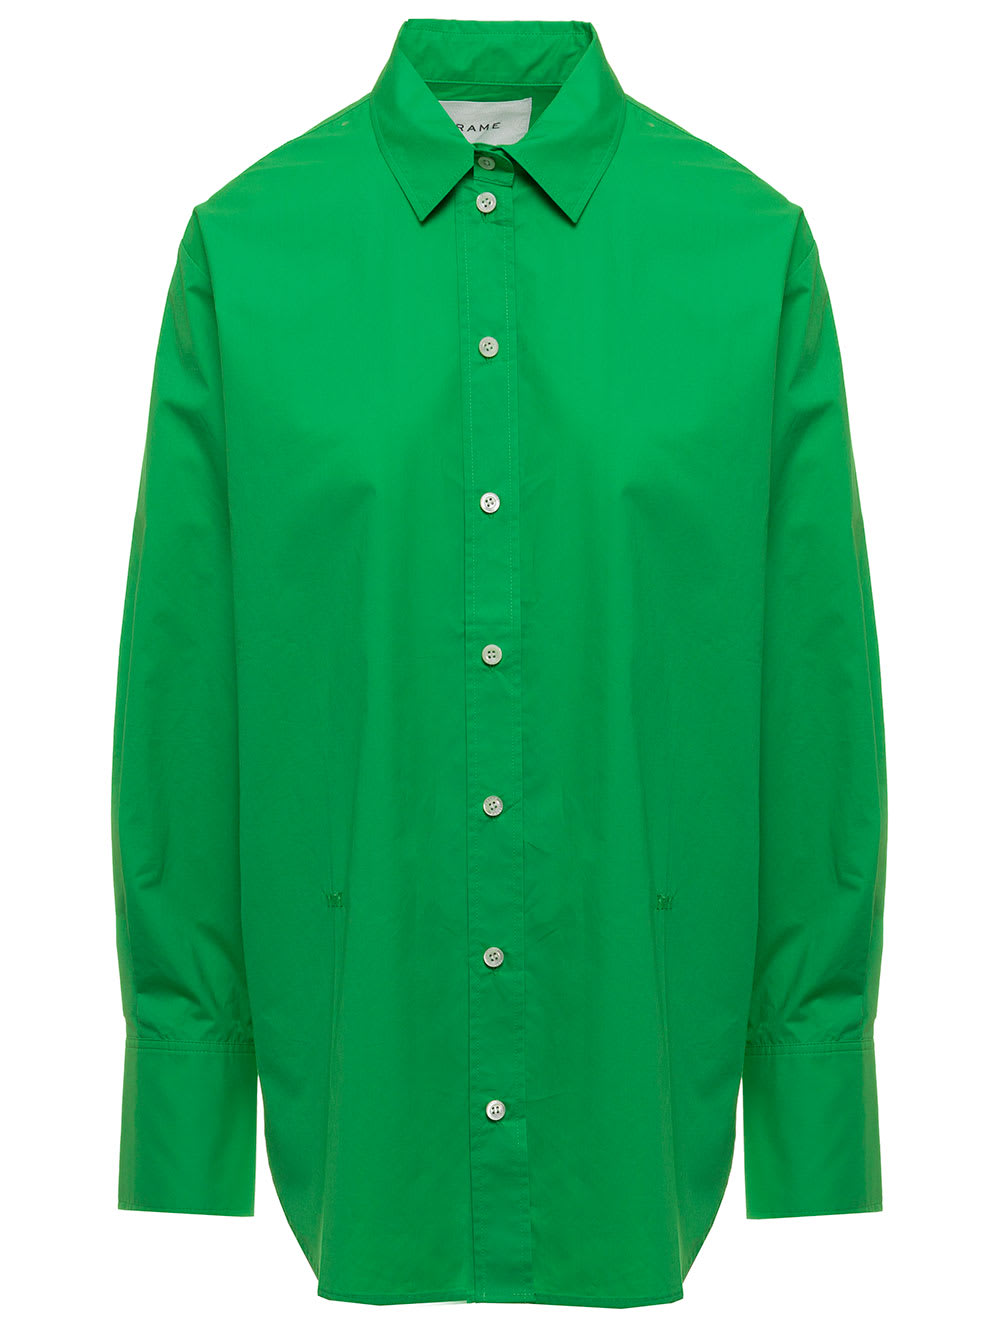 Frame Womans Green Cotton Poplin Shirt